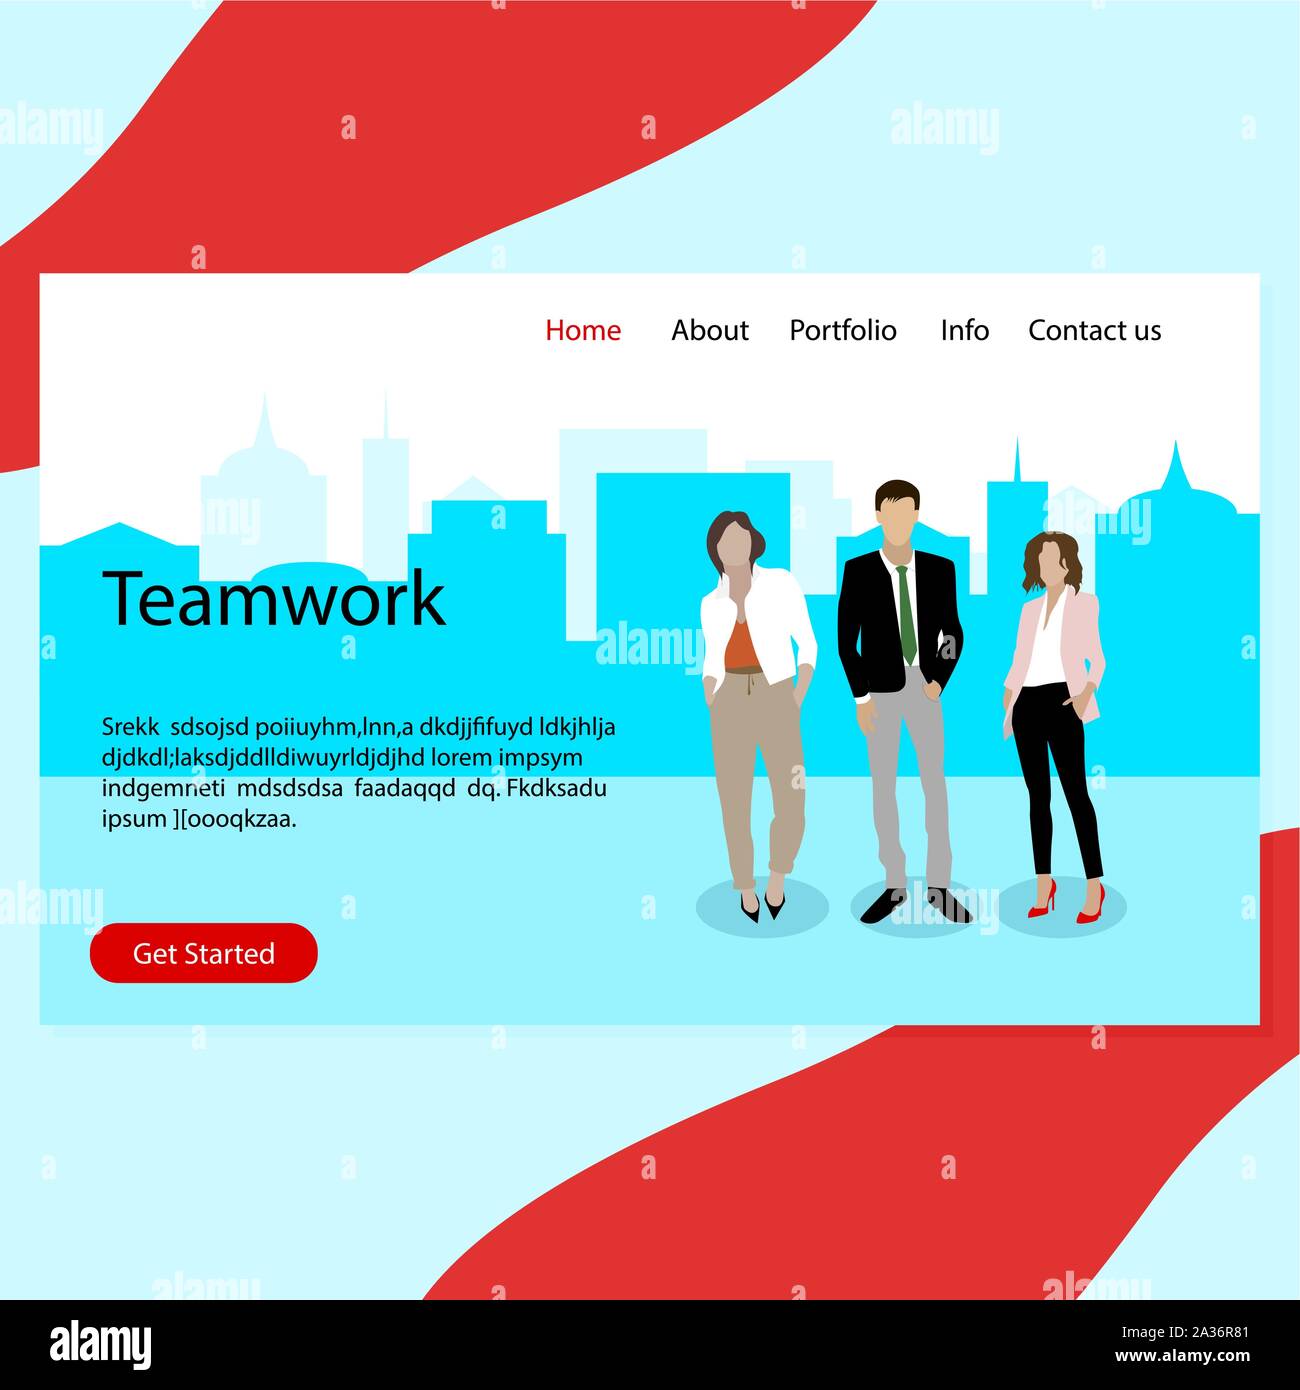 Erfolg Teamwork, echten zuversichtlich Business Team landing page. Zuversichtlich erfolgreichen professionellen Team und Führung illustration Vektor Stock Vektor